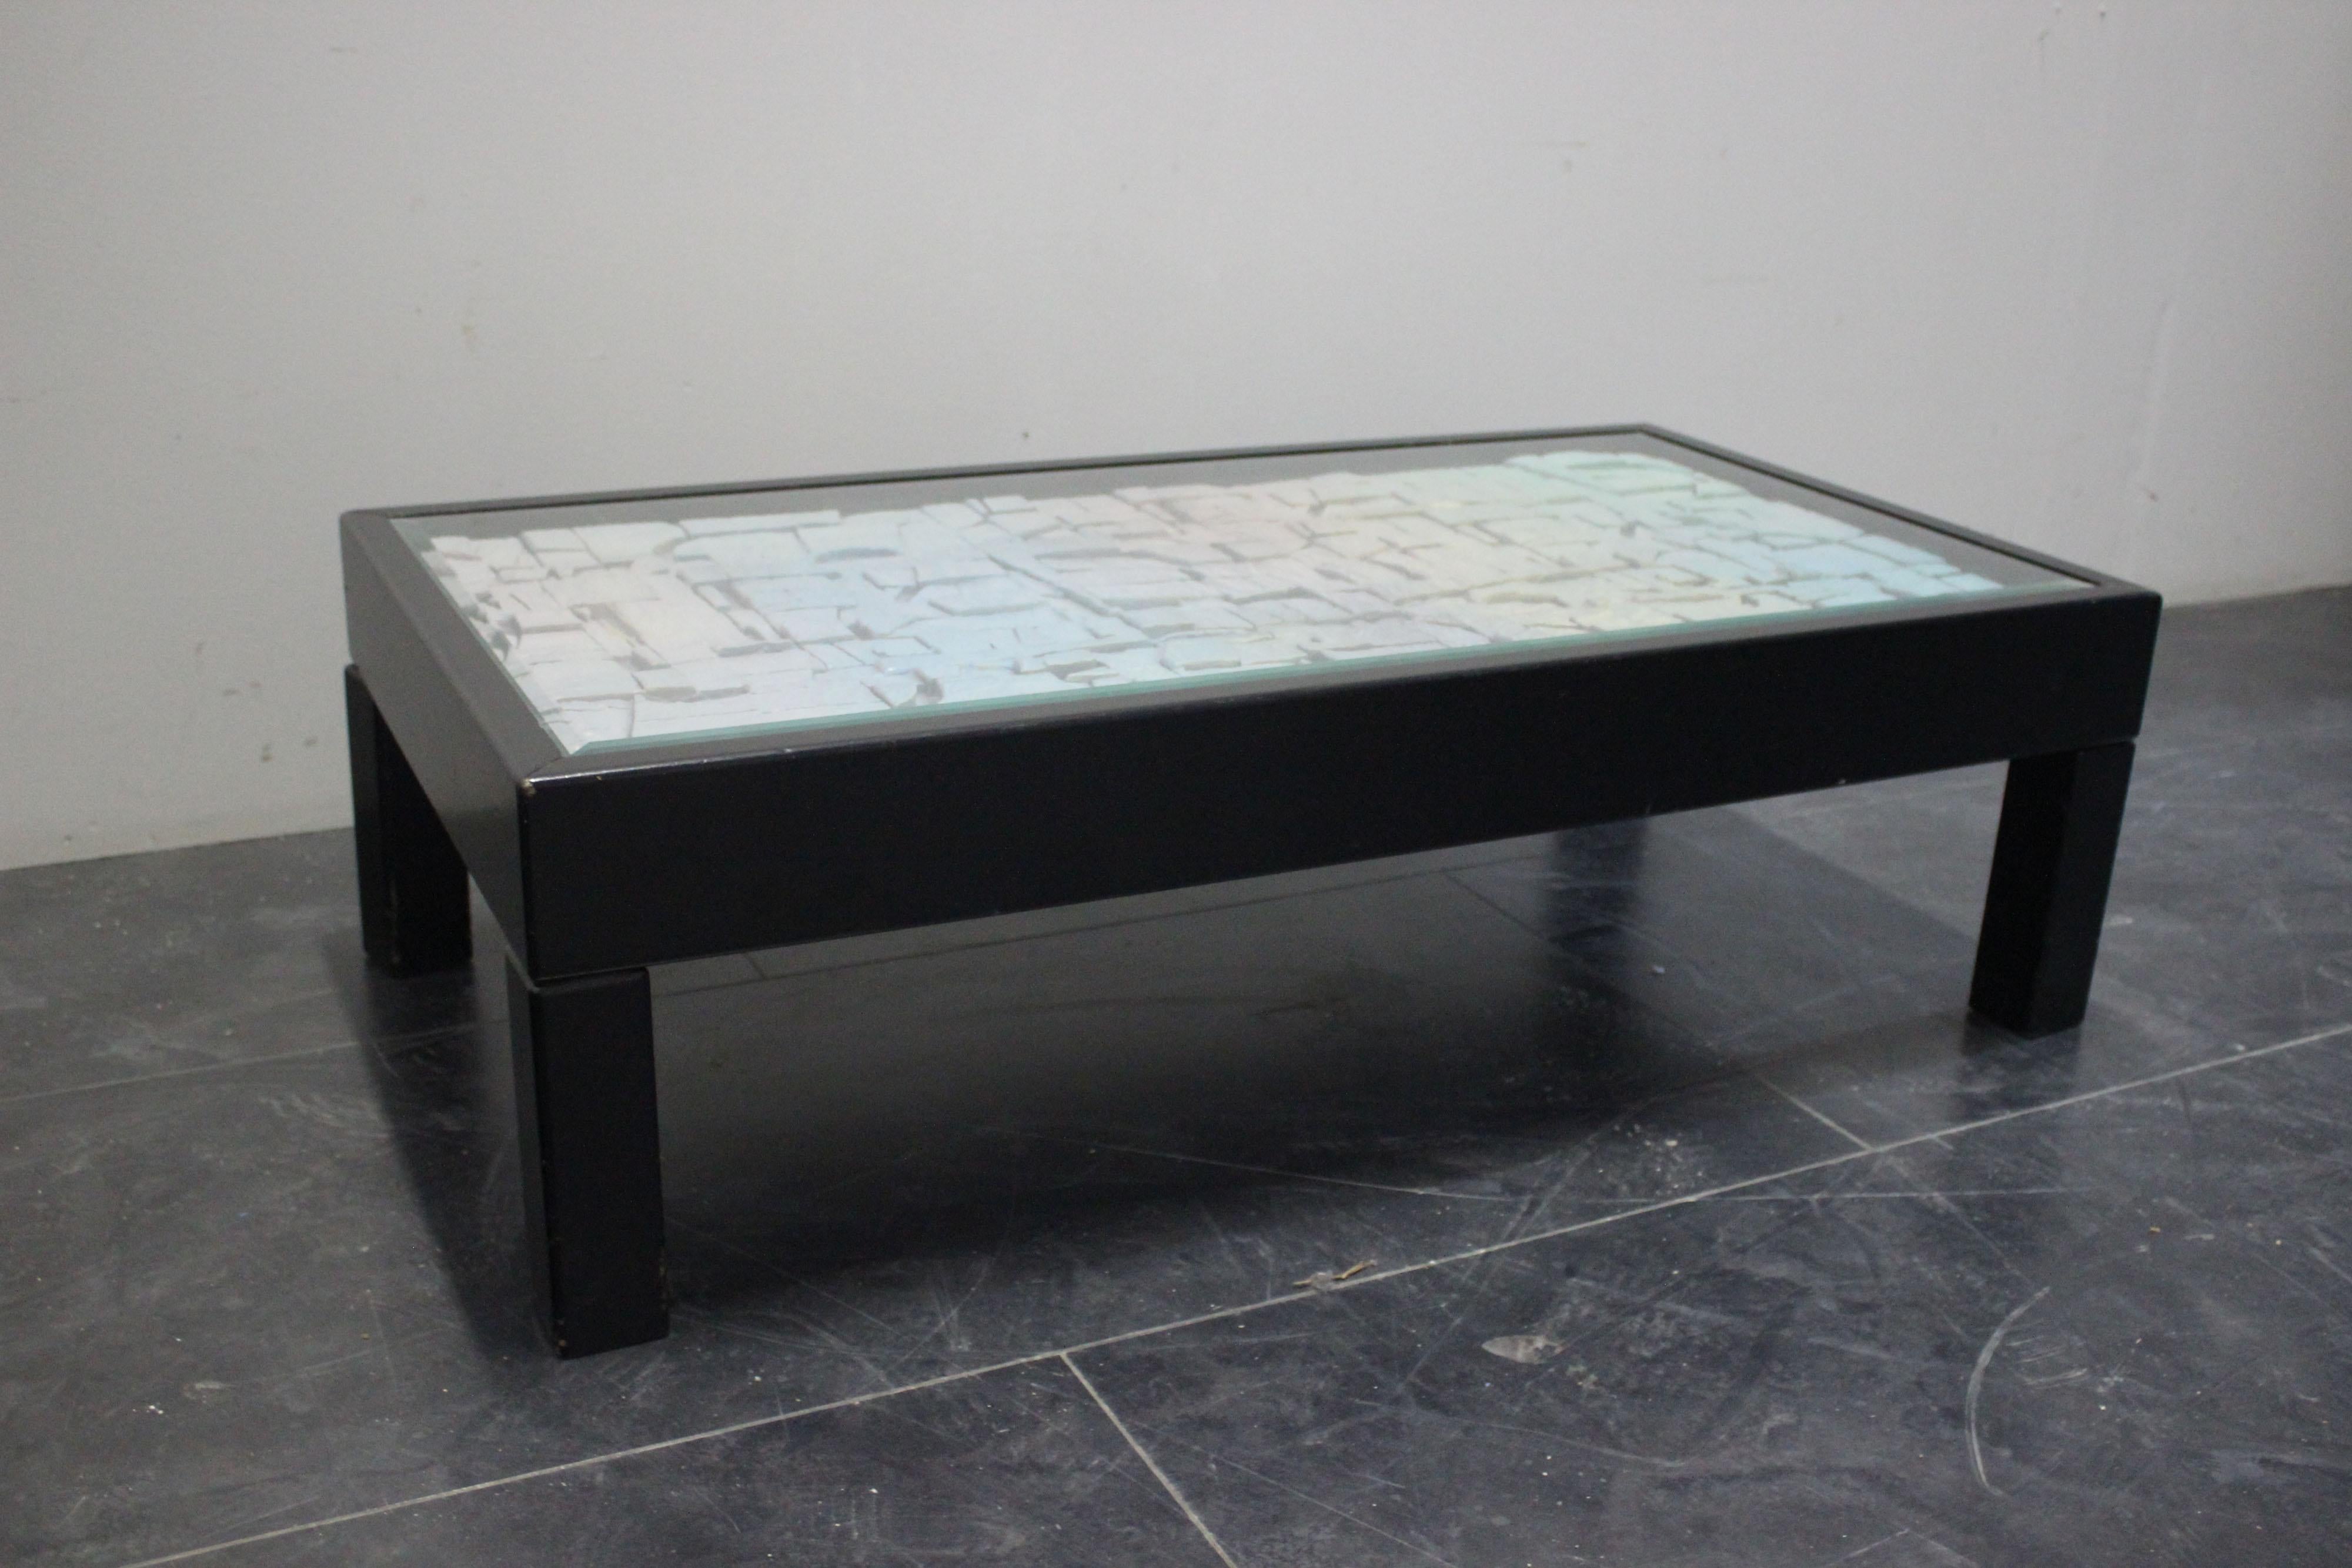 Le style est Space Age et la qualité décorative est élevée pour le plateau de cette petite table des années 70, le corps est en bois laqué noir, sous le plateau en cristal de roche, une plaque en relief au thème d'une possible surface planétaire,